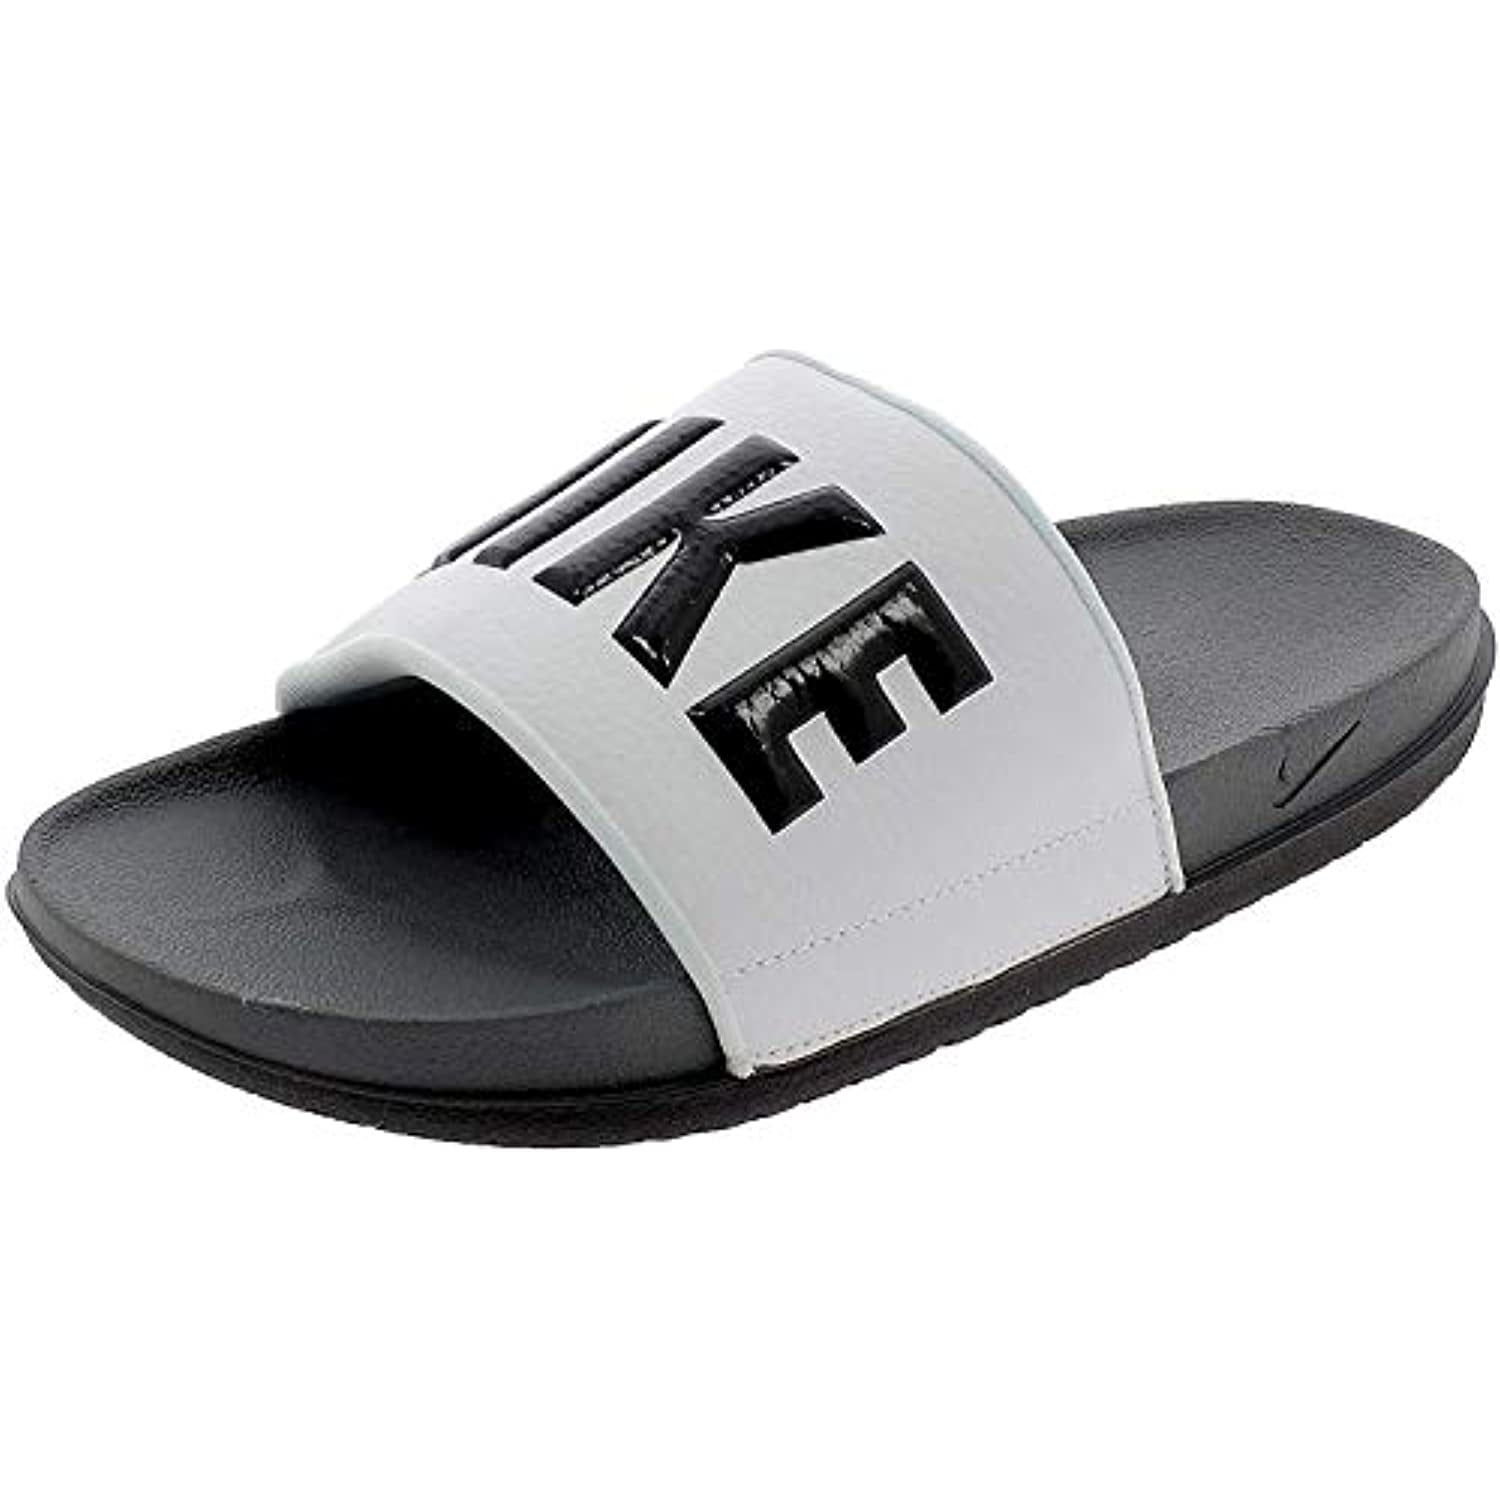 nike offcourt men's slide sandals